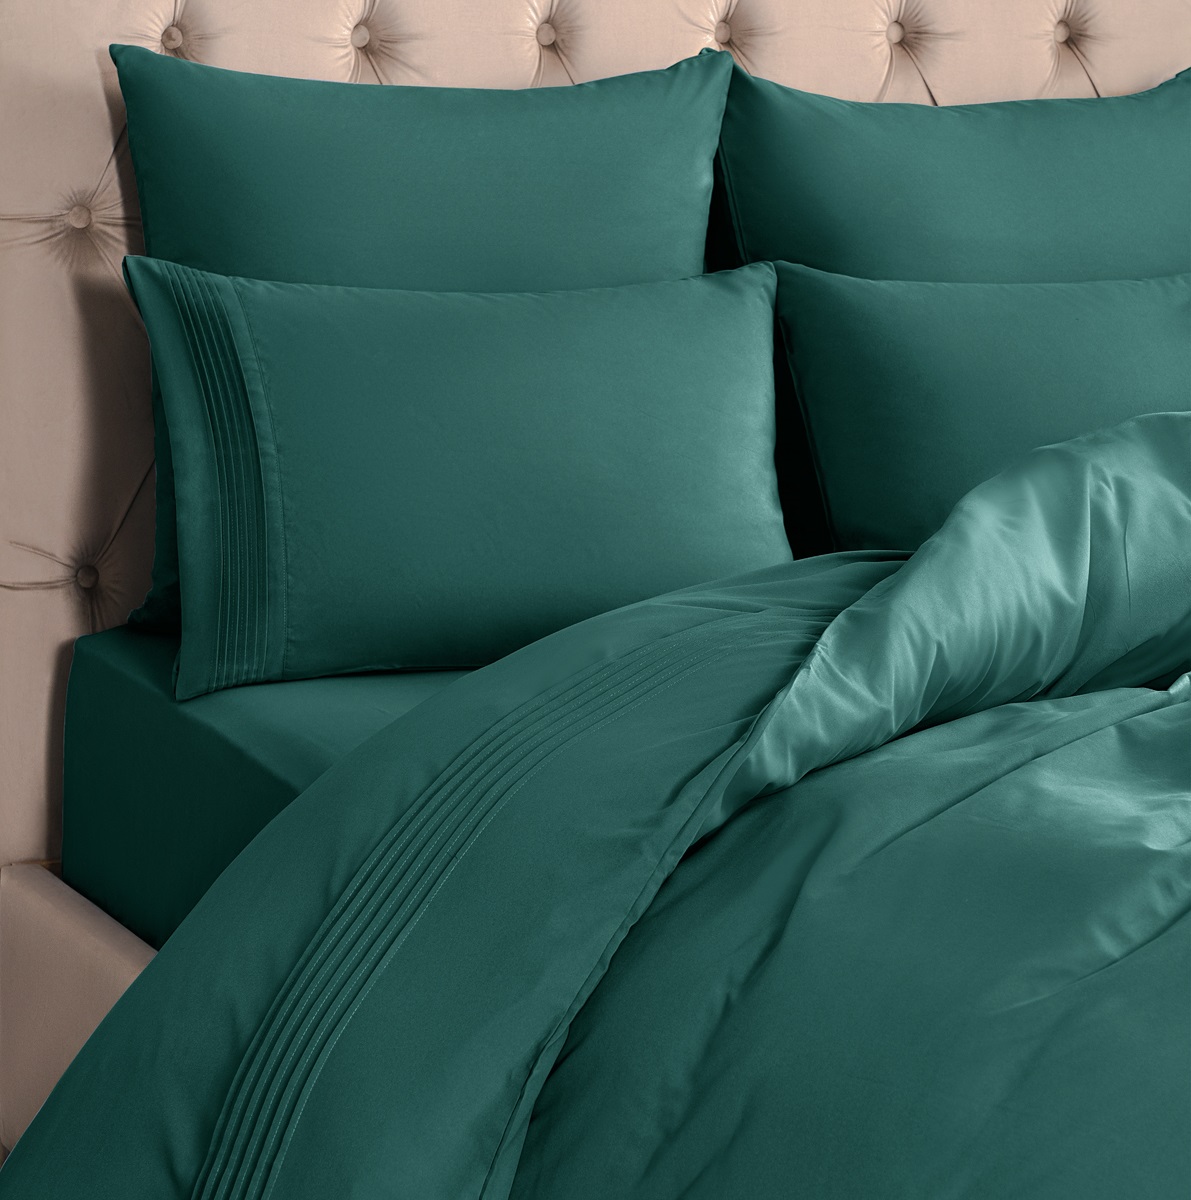 Комплект постельного белья Sleepix Миоко зеленый Двуспальный, размер Двуспальный - фото 4